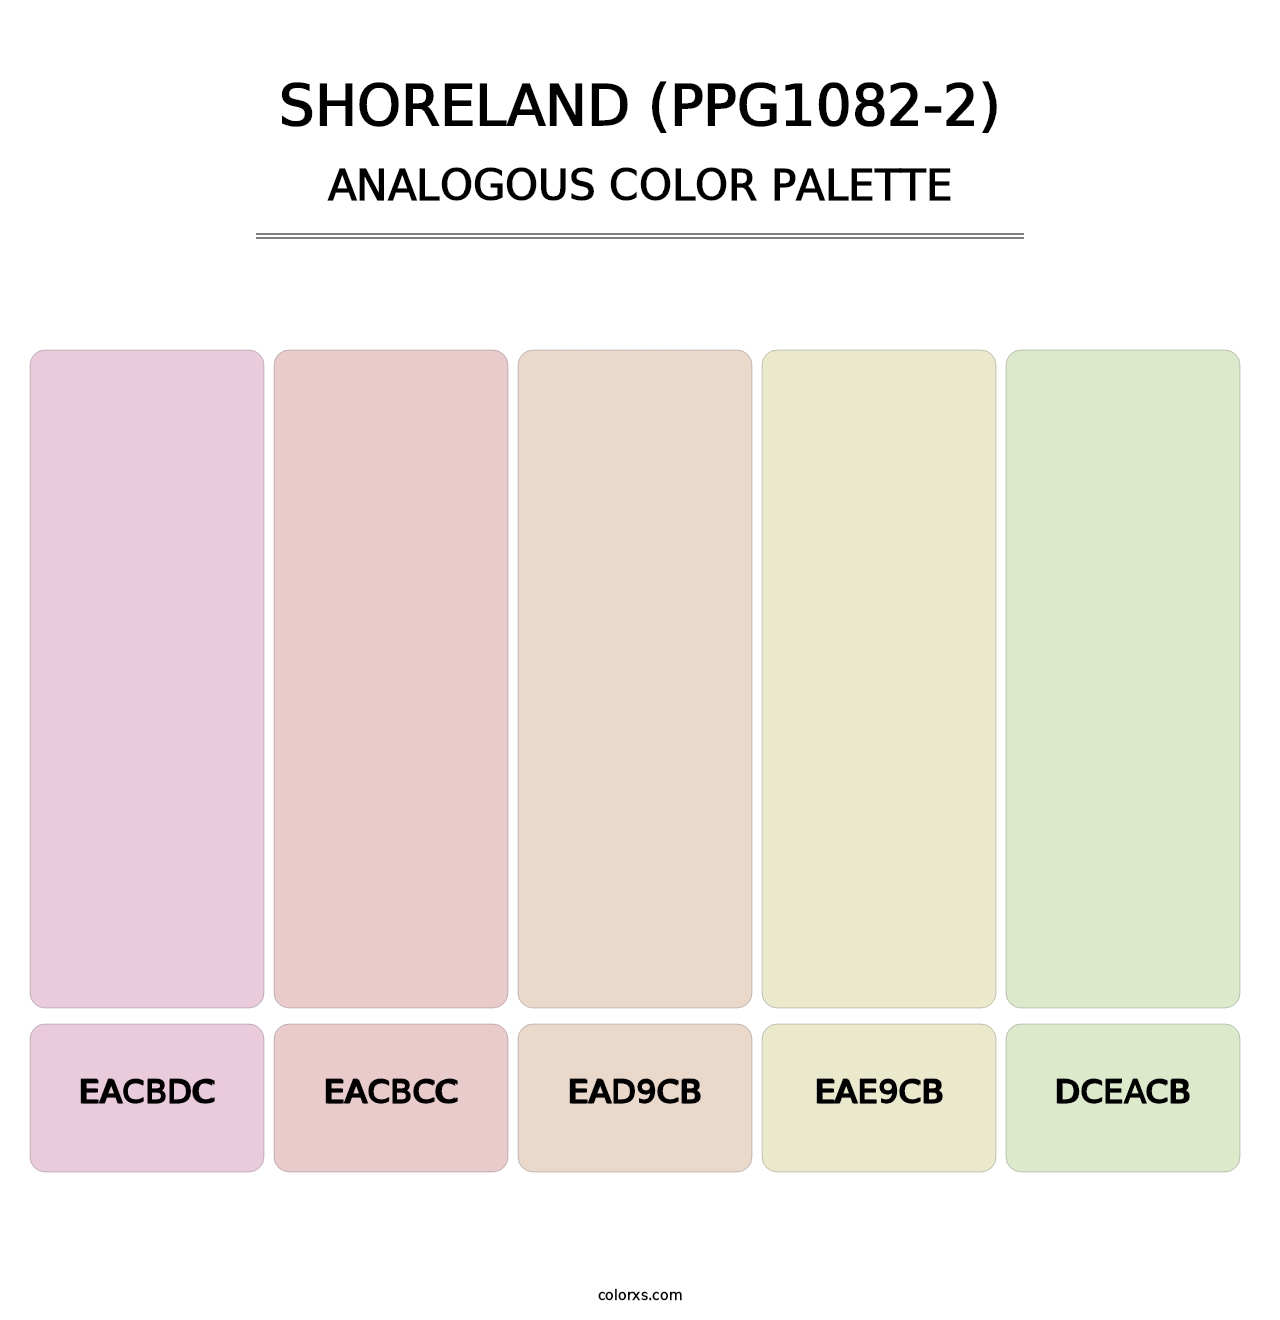 Shoreland (PPG1082-2) - Analogous Color Palette